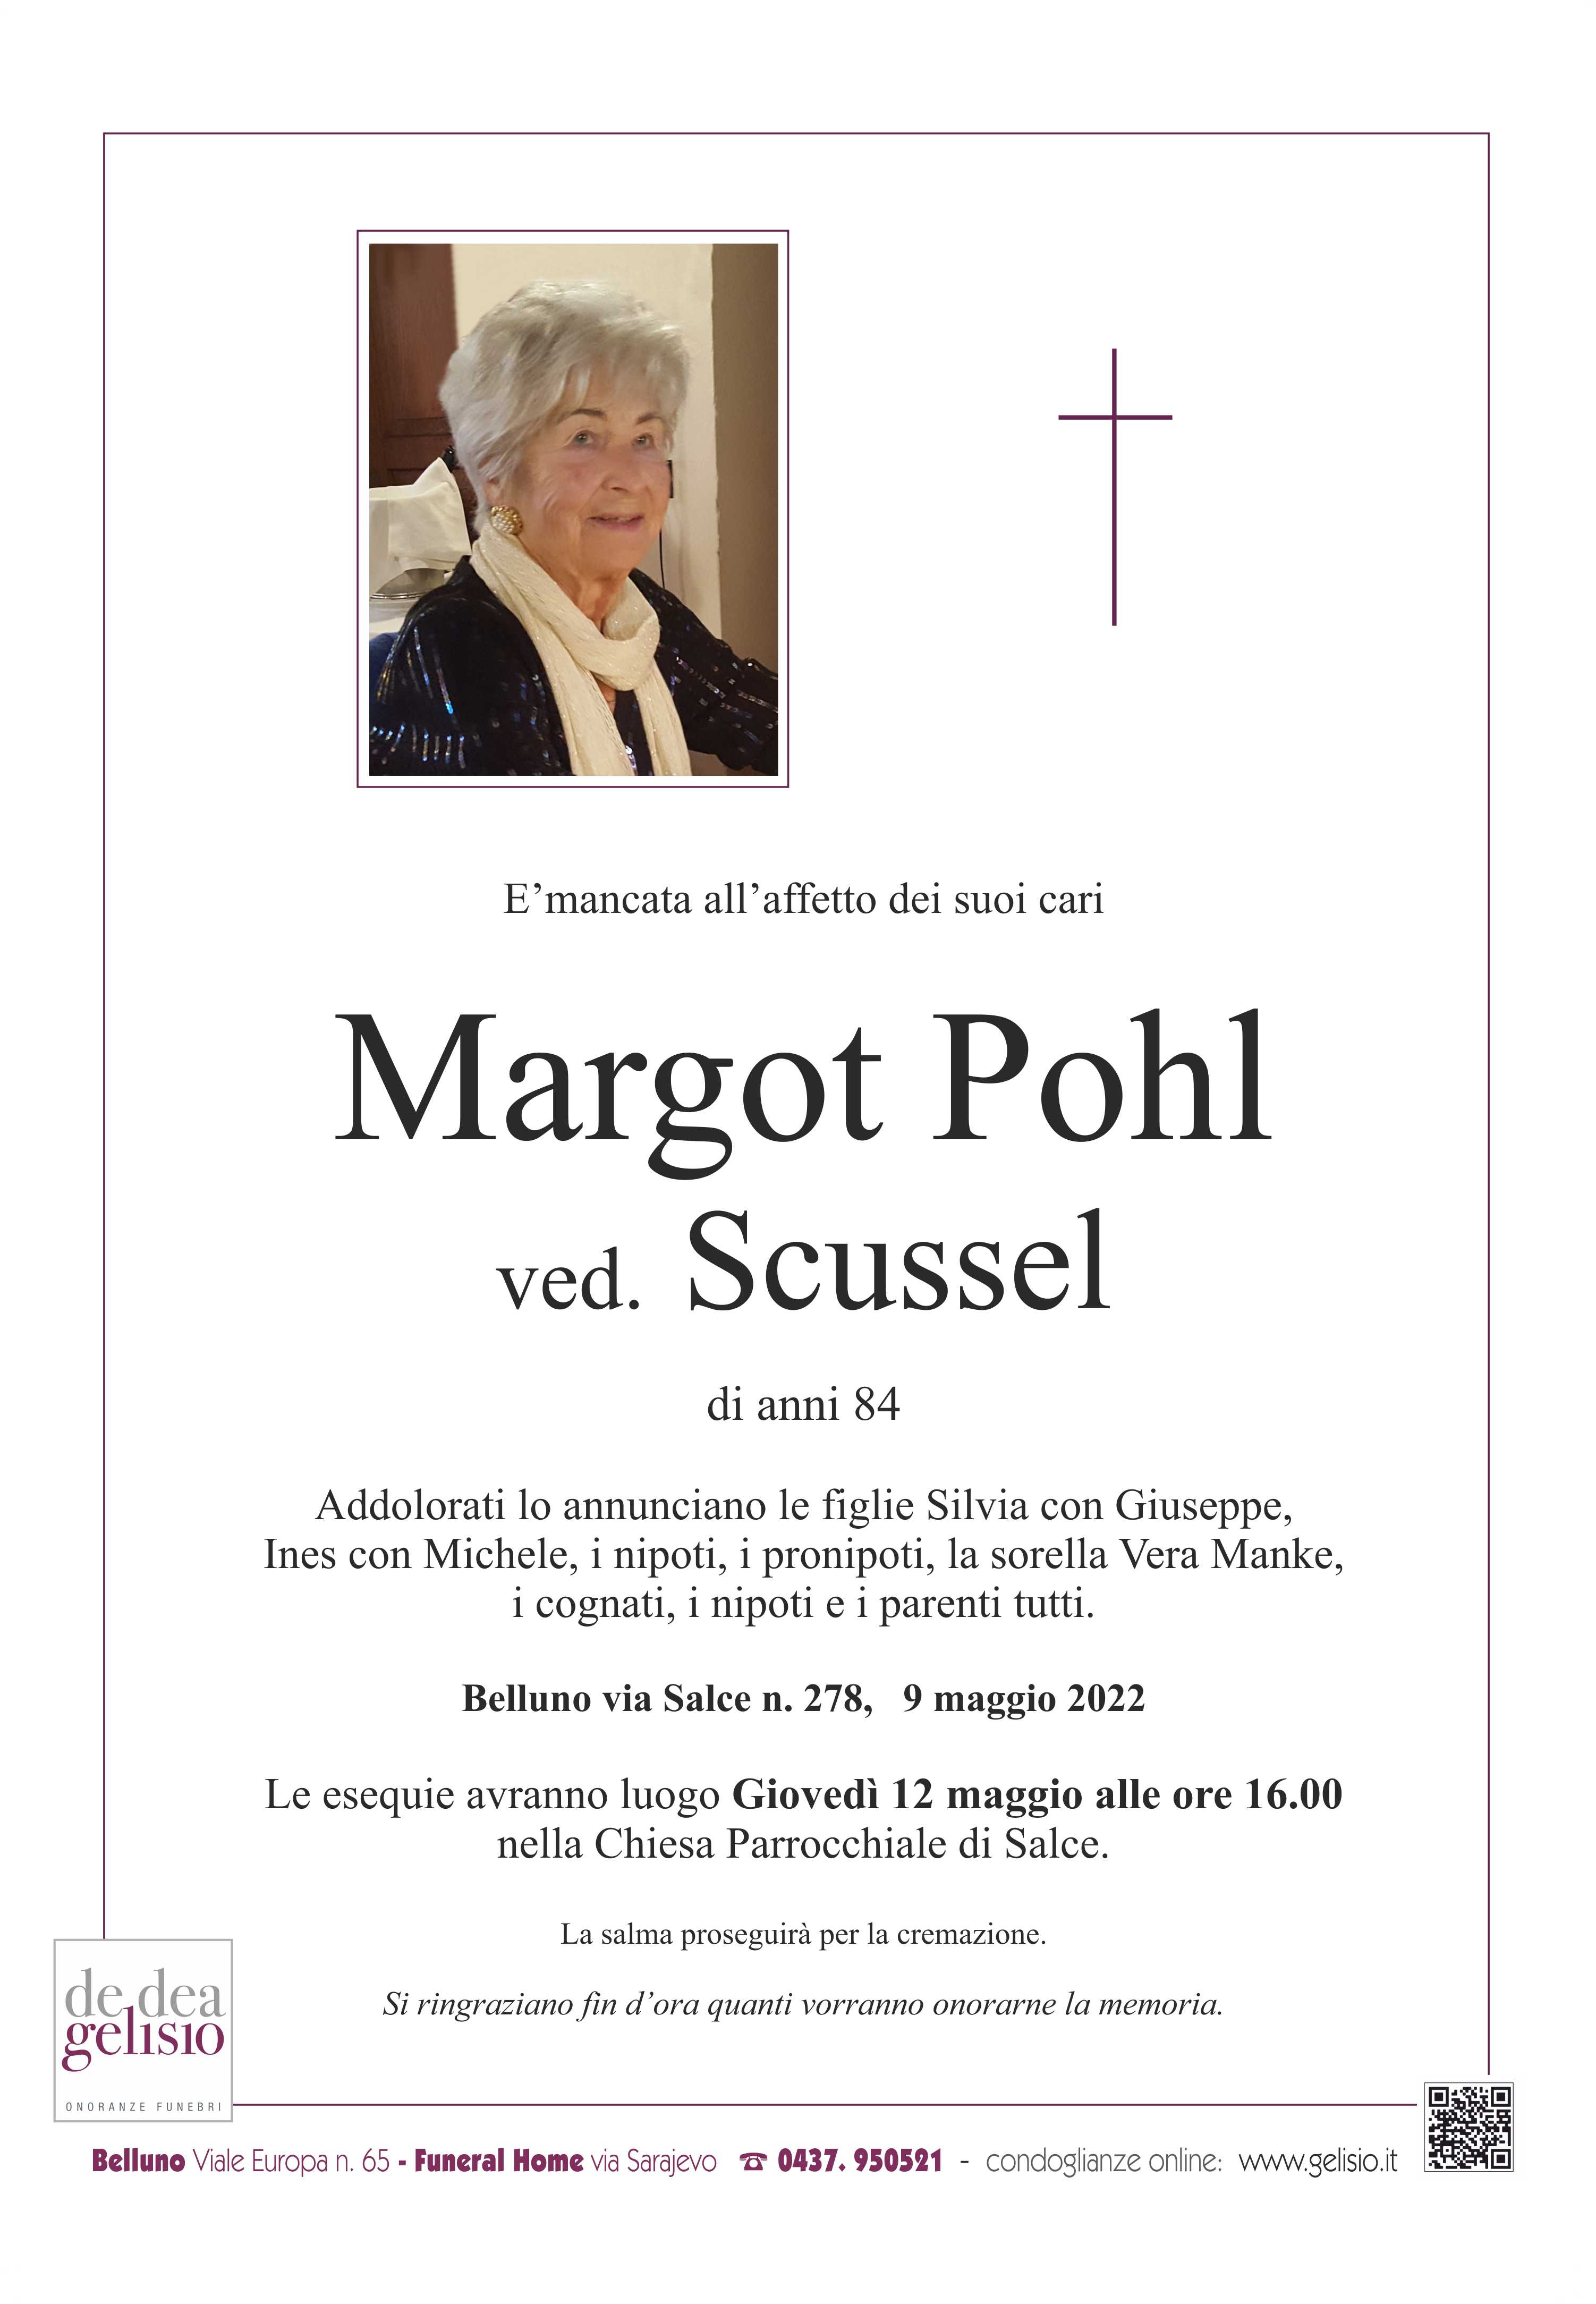 Pohl Margot